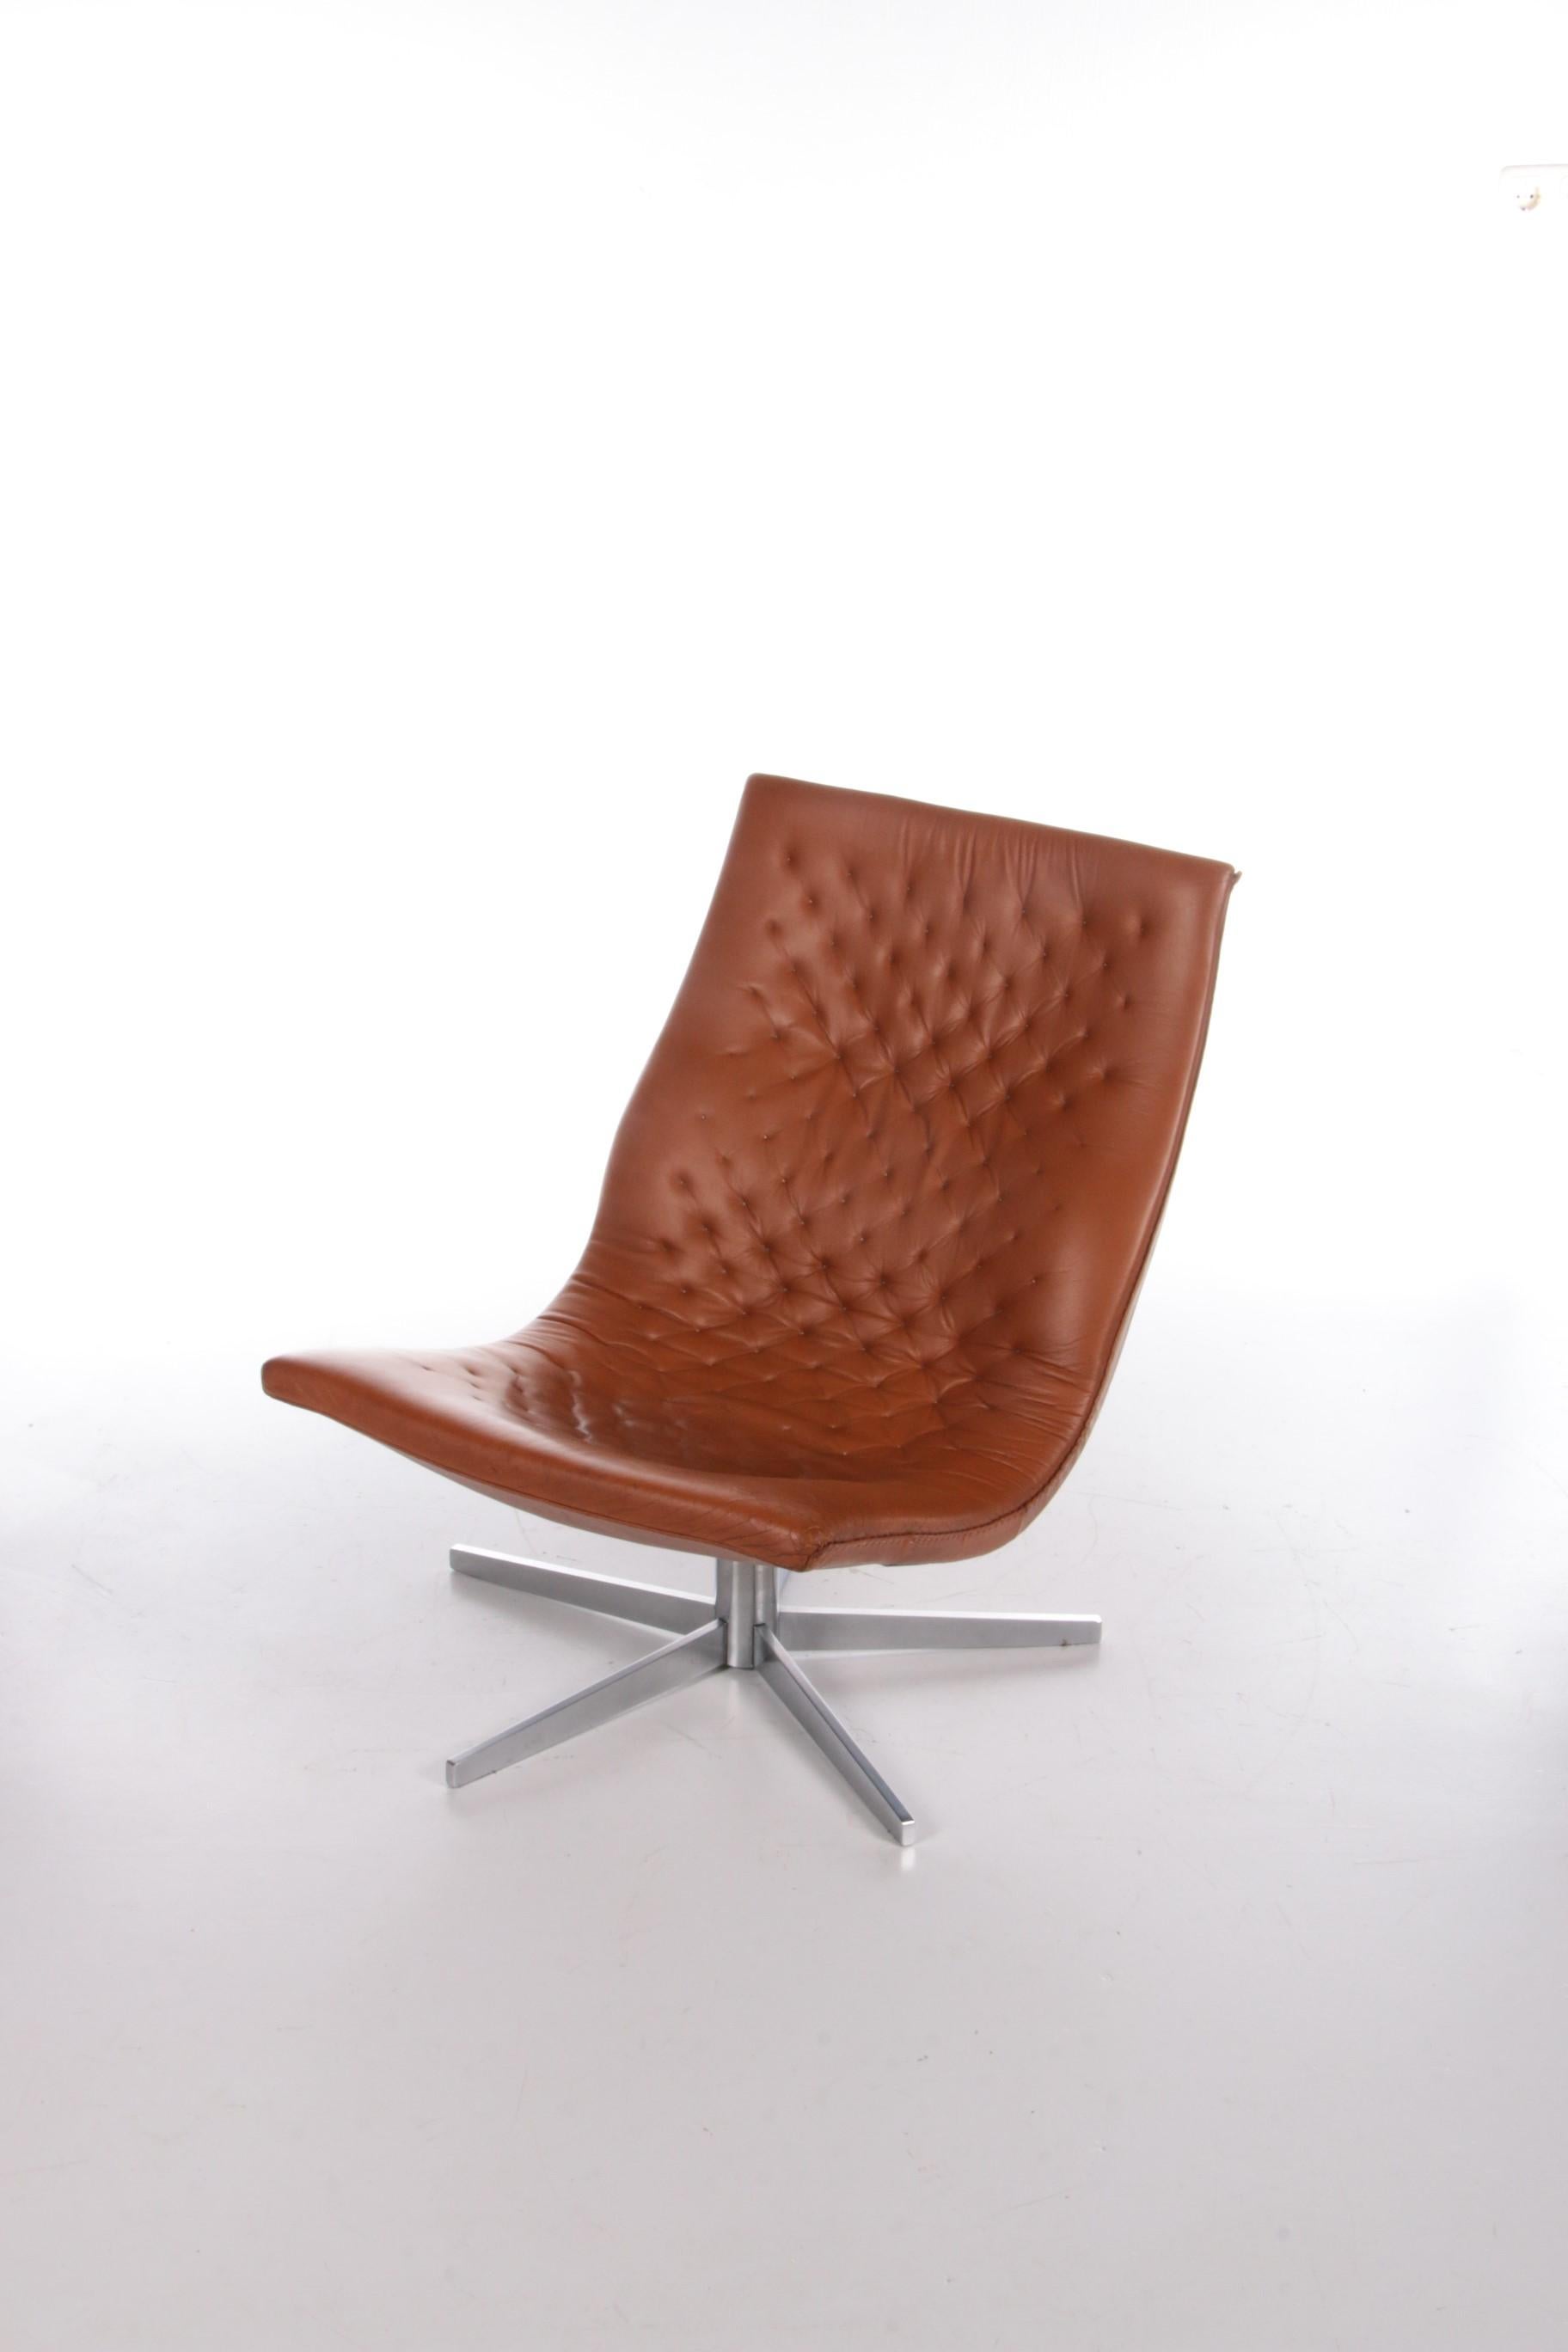 Schöne Cognac Farbe Leder entspannen Sessel von De Sede Schweiz gemacht.

Der Stuhl hat einen Metallboden mit einem schönen Fuß.

Dieser Sessel ist komplett handgefertigt und der Rand ist komplett von Hand geschlossen, dies ist wirklich ein